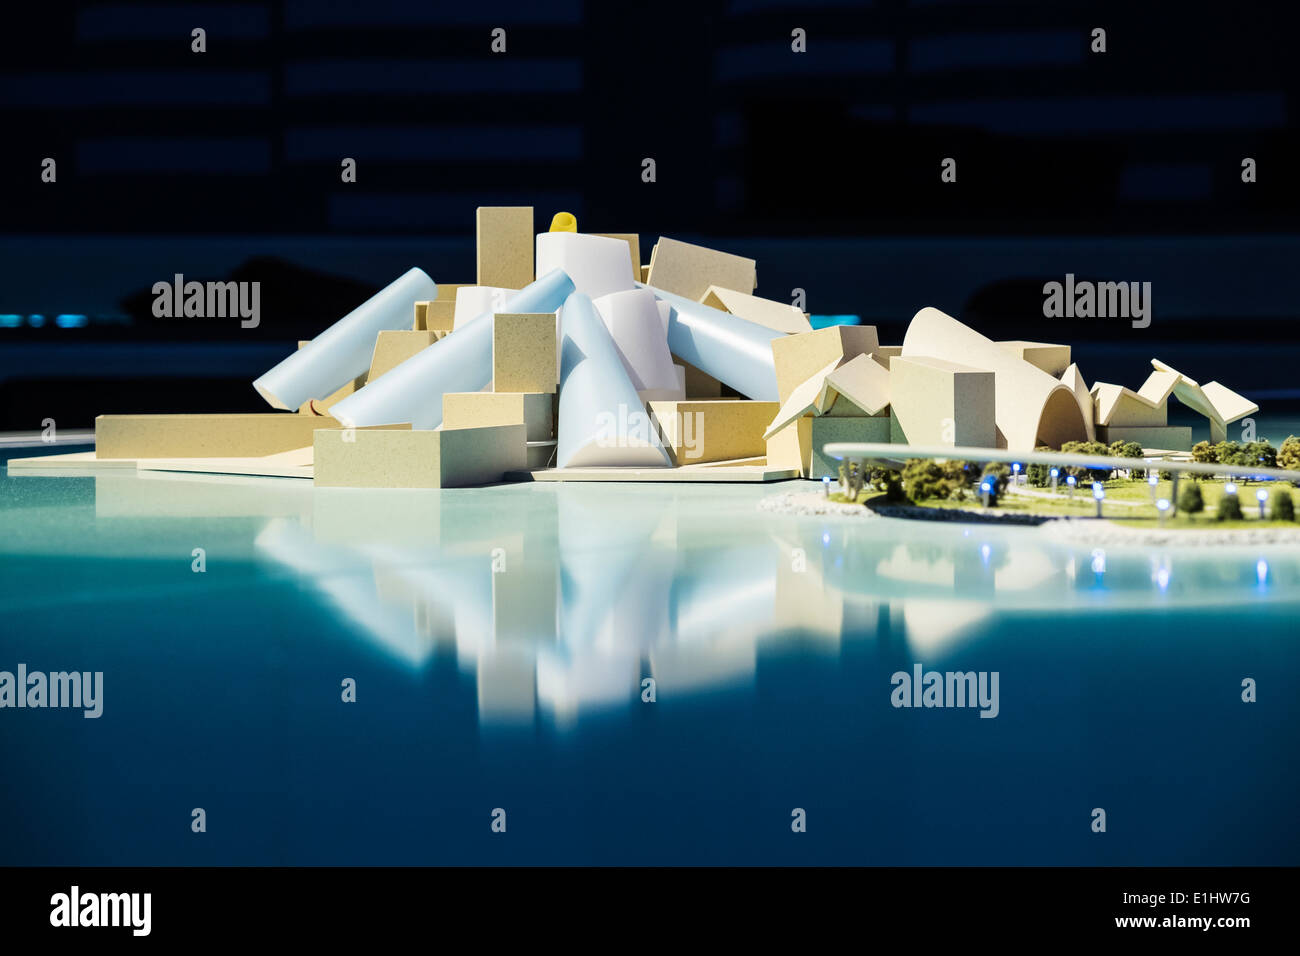 Modell der neuen Guggenheim-Museum im Bau auf Saadiyat Island in Abu Dhabi Vereinigte Arabische Emirate Stockfoto